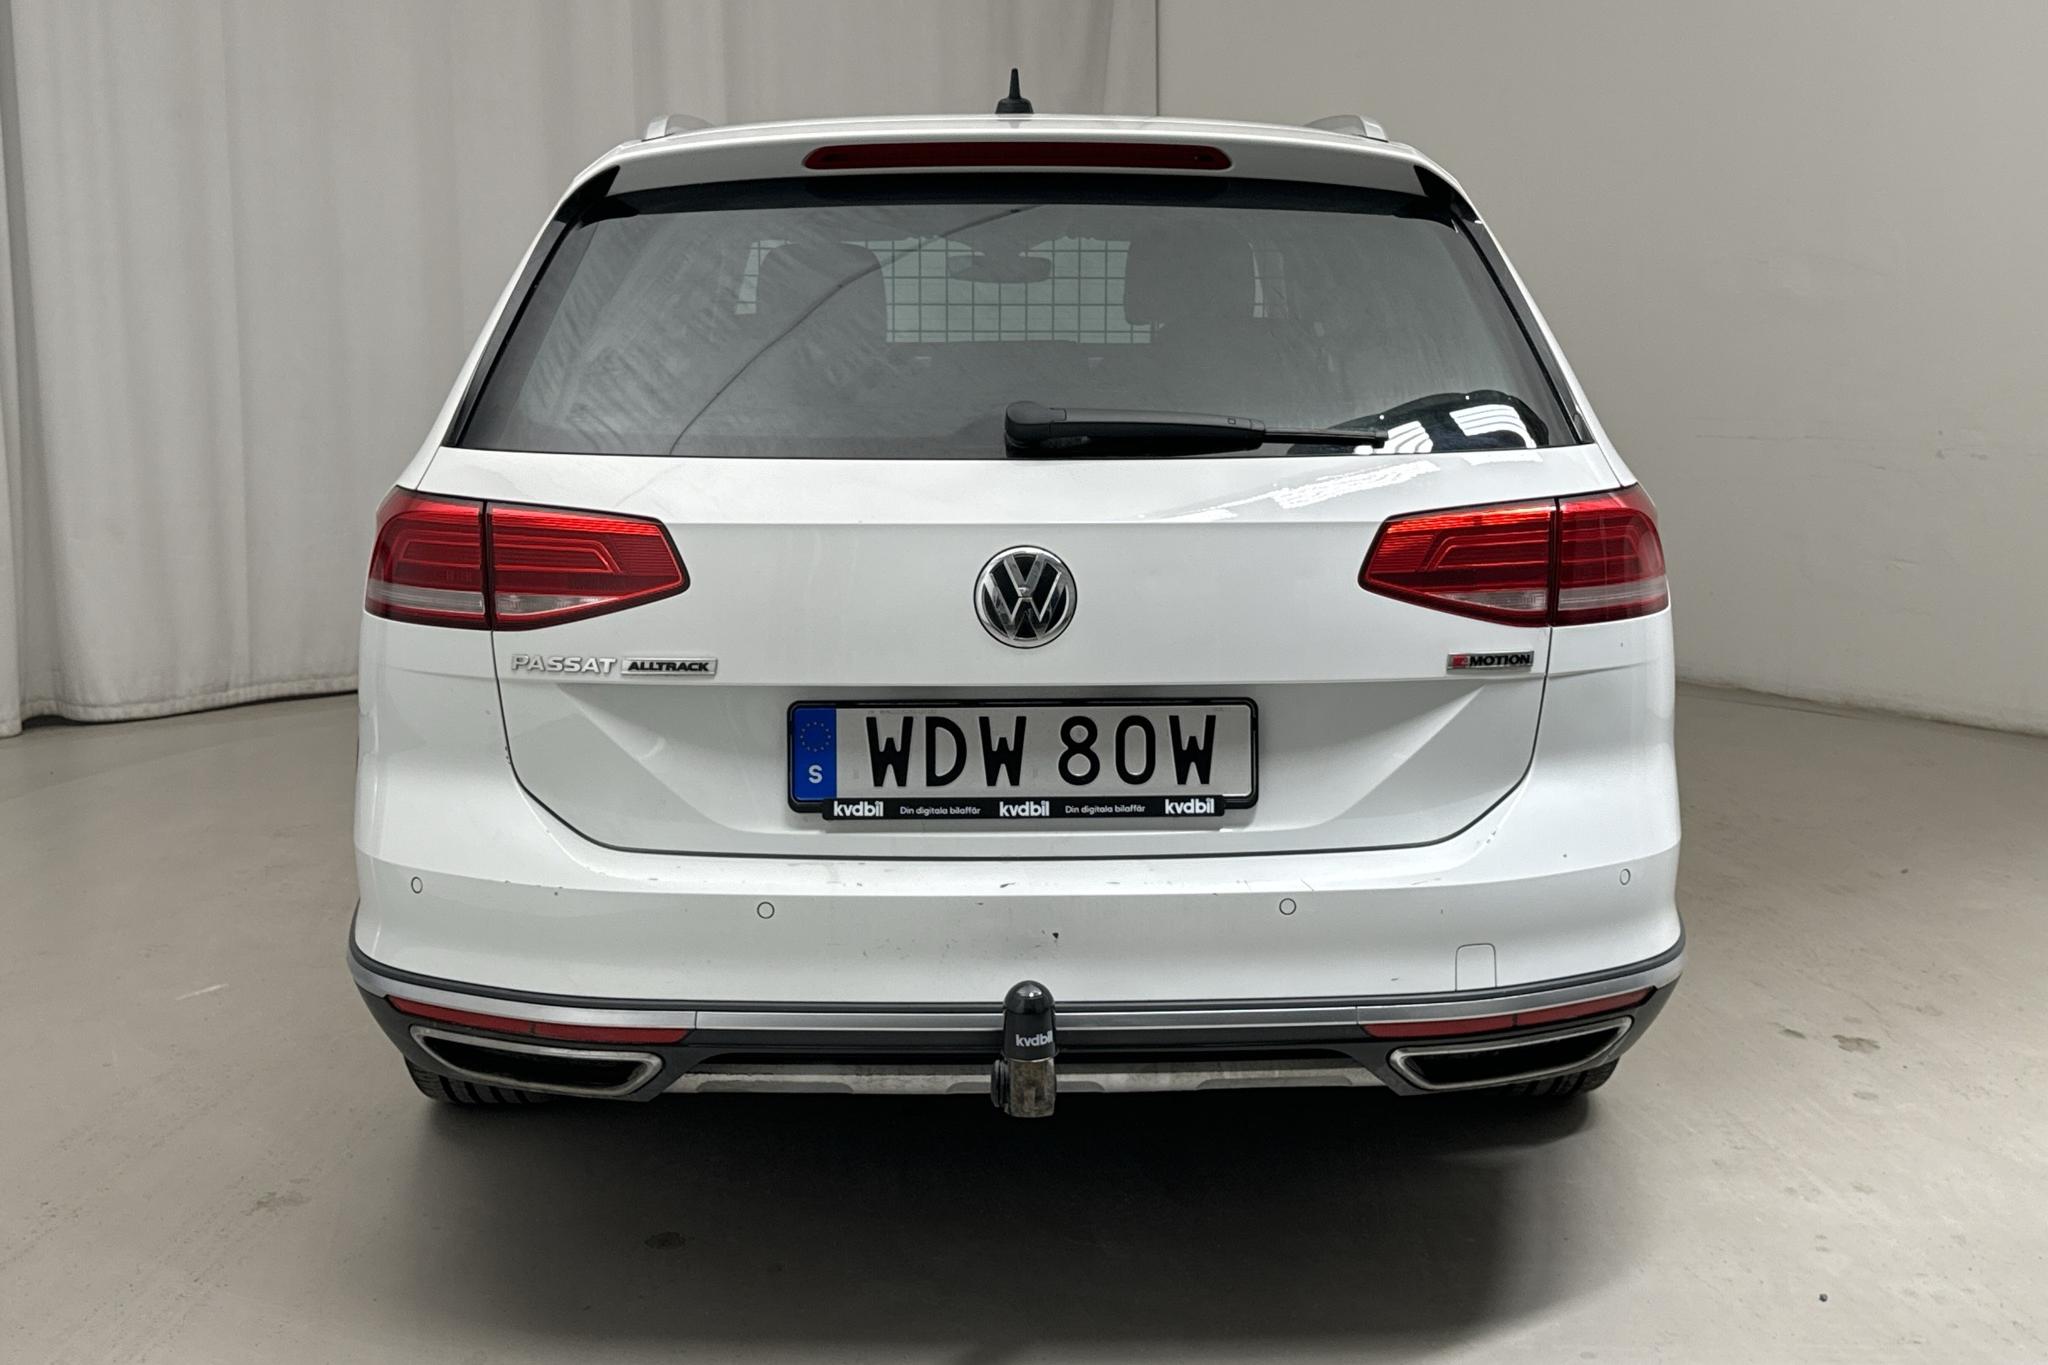 VW Passat Alltrack 2.0 TDI 4MOTION (190hk) - 198 760 km - Automaattinen - valkoinen - 2019